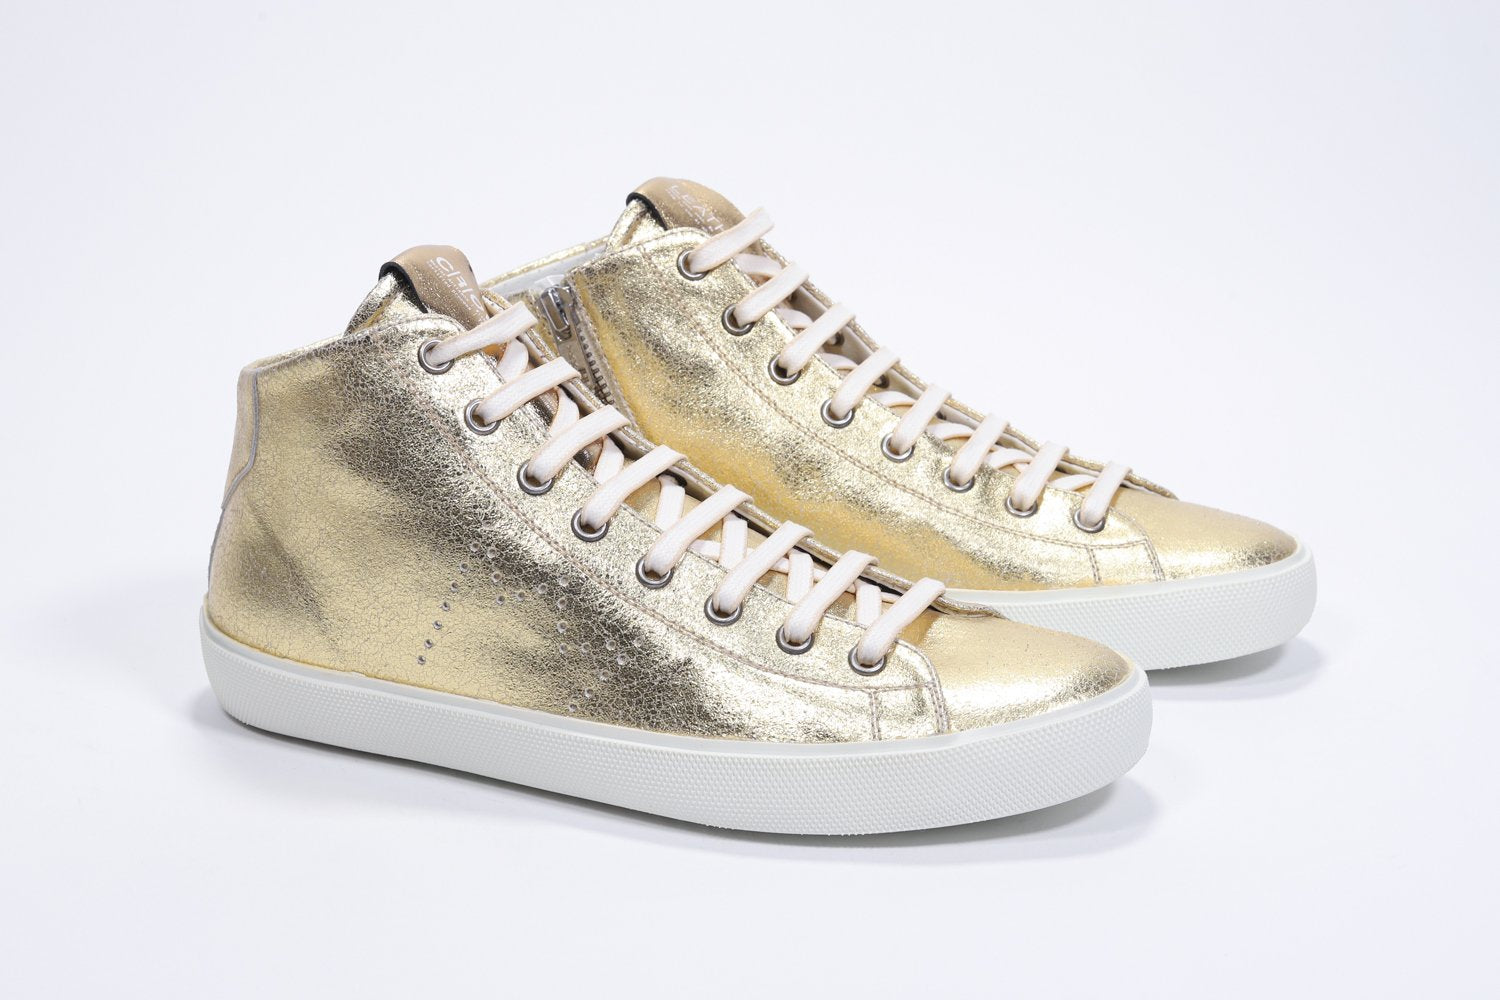 Vue de trois quarts de l'avant de la chaussure de taille moyenne en or sneaker avec une tige en cuir avec un logo perforé, une fermeture éclair interne et une semelle blanche.